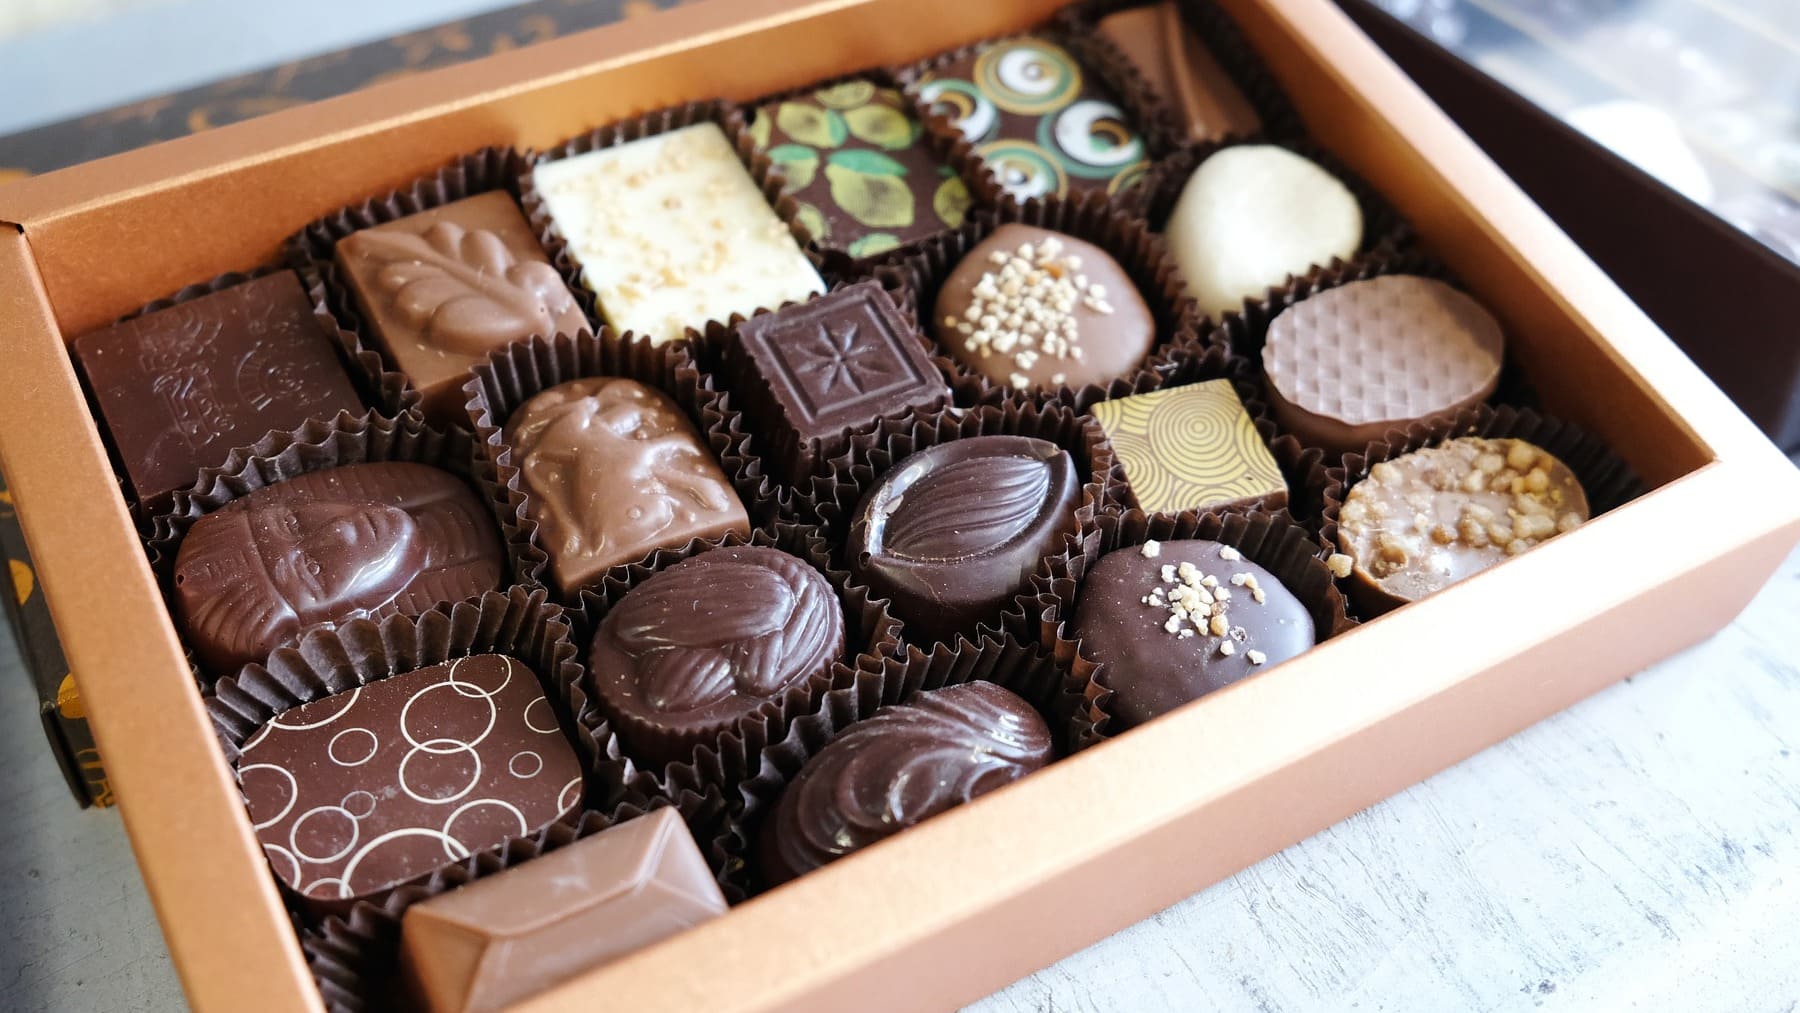 ¿Qué tipos de chocolates se pueden encontrar en una caja así?